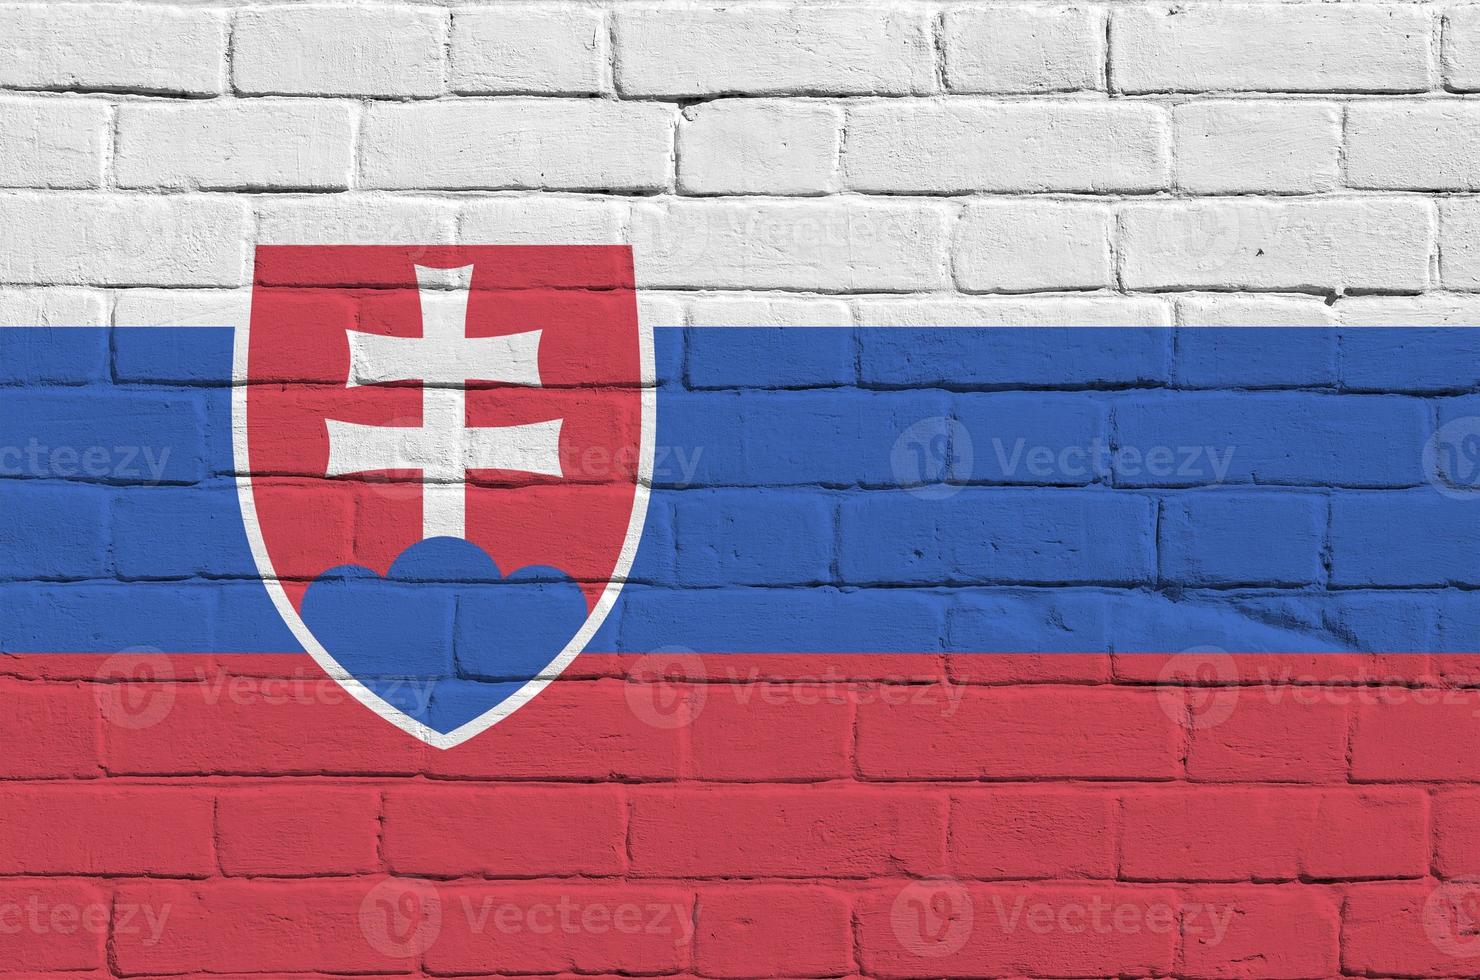 slovakia flagga avbildad i måla färger på gammal tegel vägg. texturerad baner på stor tegel vägg murverk bakgrund foto